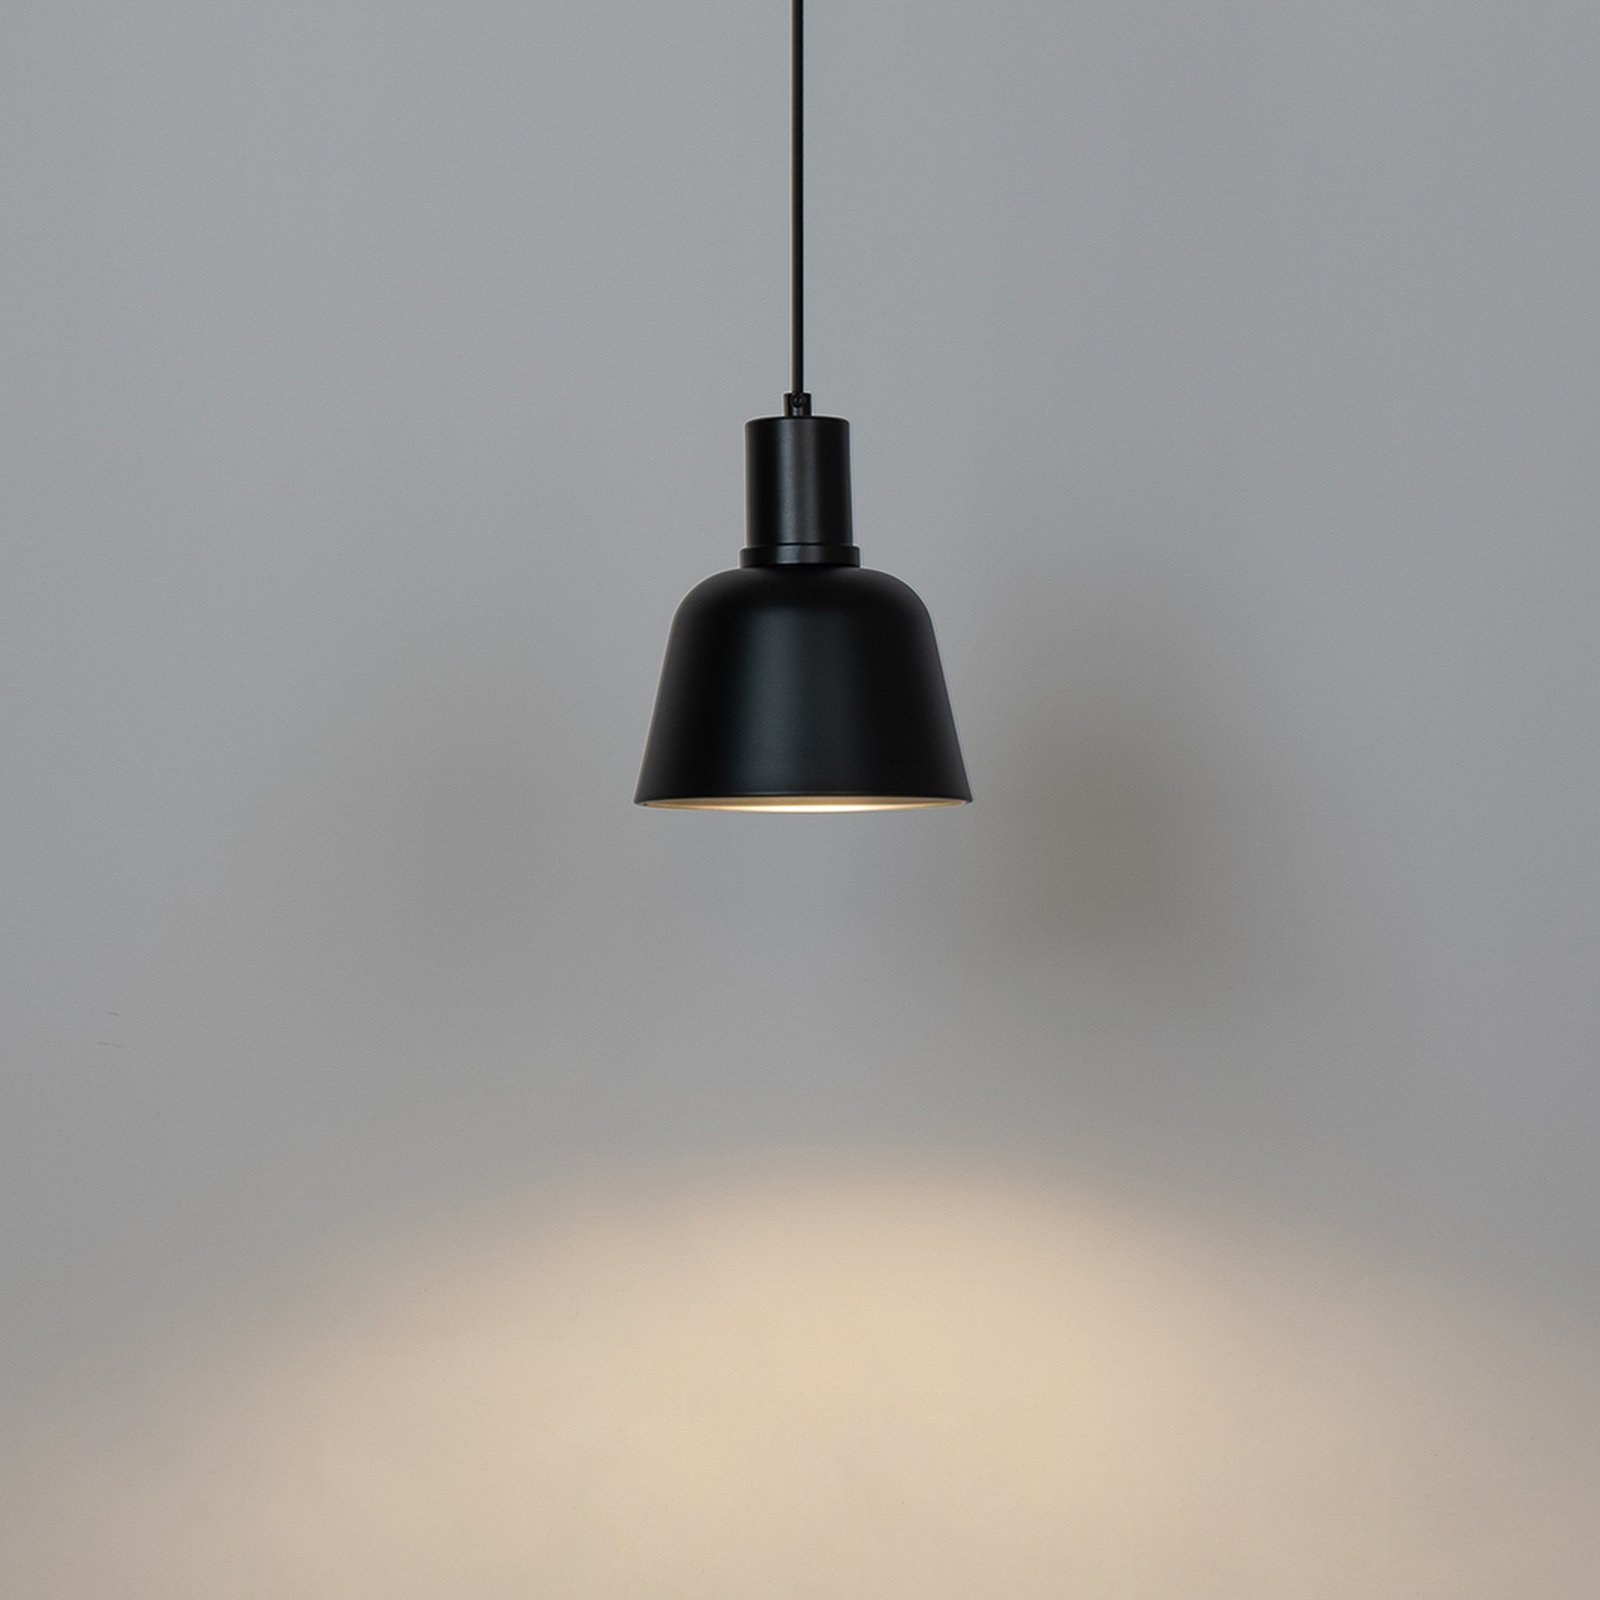 Lucande Servan-riippuvalaisin, musta, 1-lamppuinen